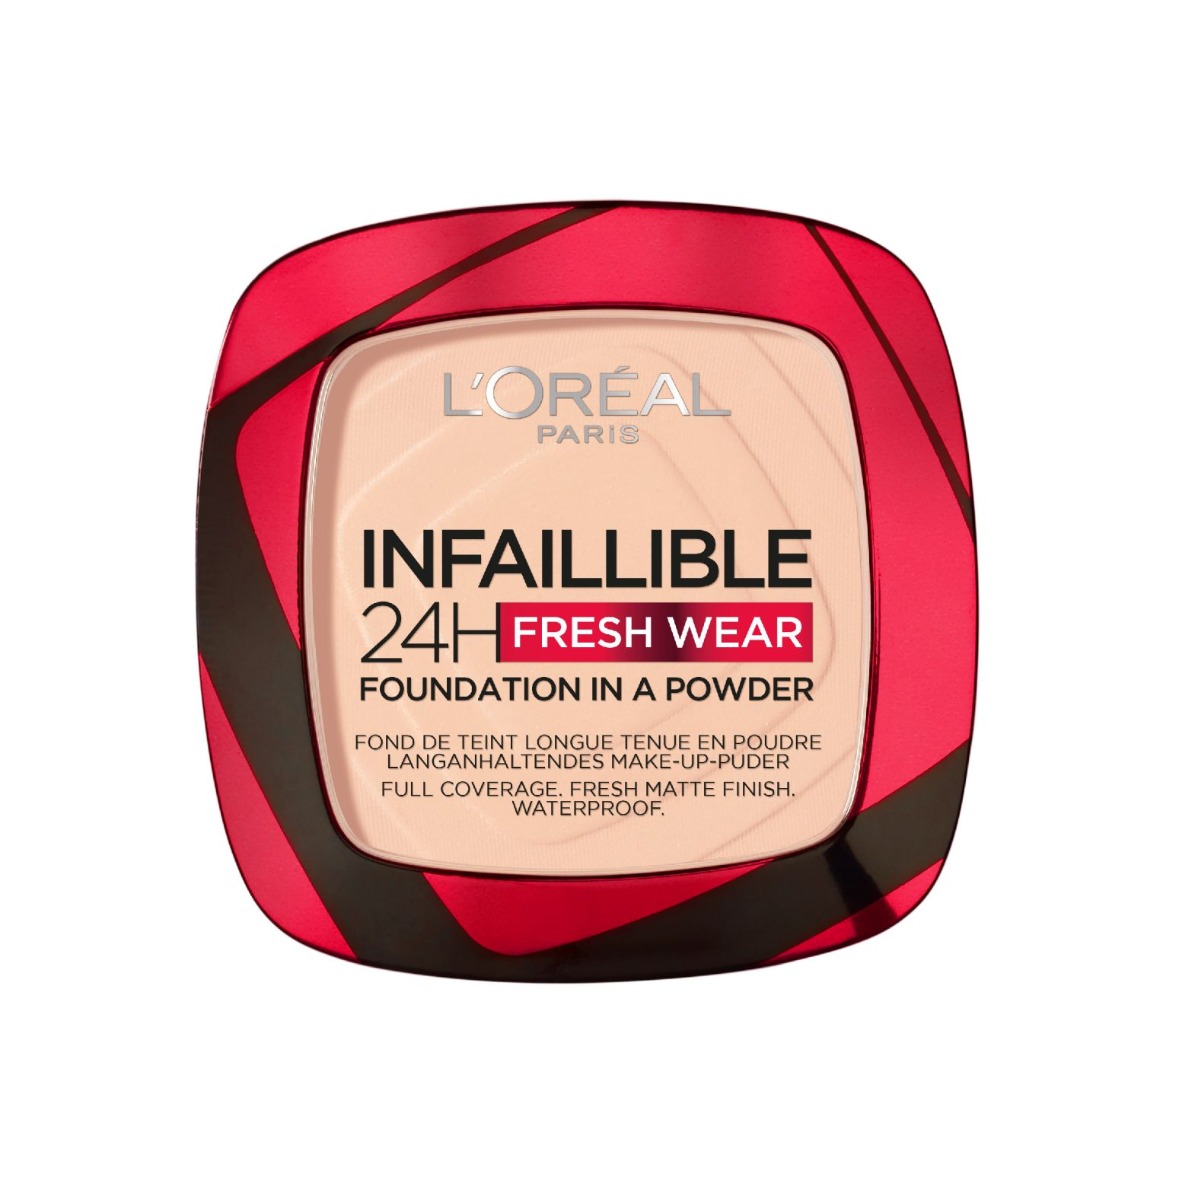 Loréal Paris Infaillible Fresh Wear 24H Foundation in a Powder odstín 180 Rose Sand make-up v pudru 9 g Loréal Paris